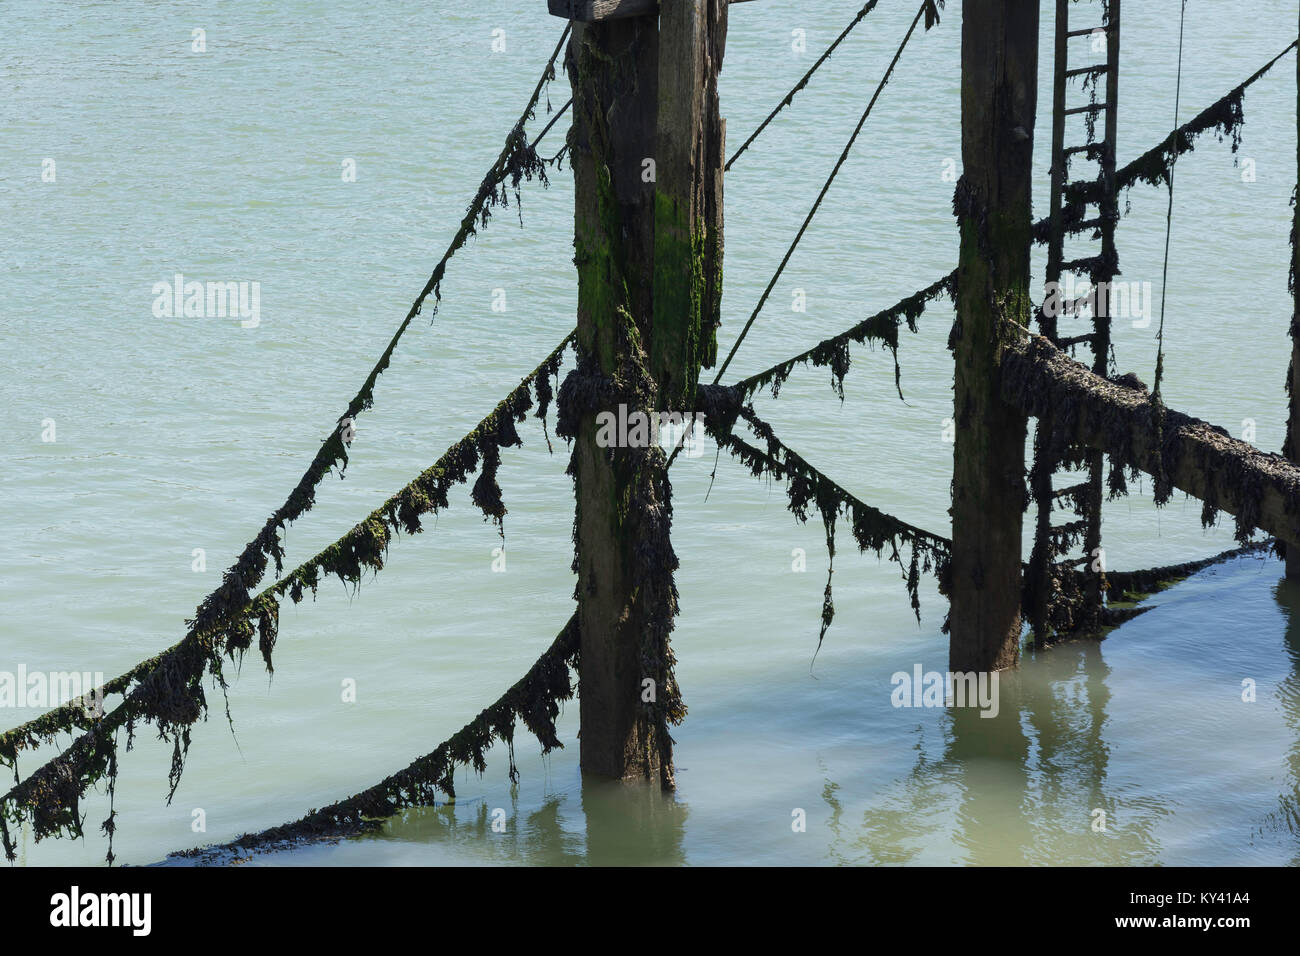 Couvert d'algues marines, de cordes, de pylônes et d'échelle sur West Quay, Newhaven, East Sussex, Angleterre, Royaume-Uni Banque D'Images